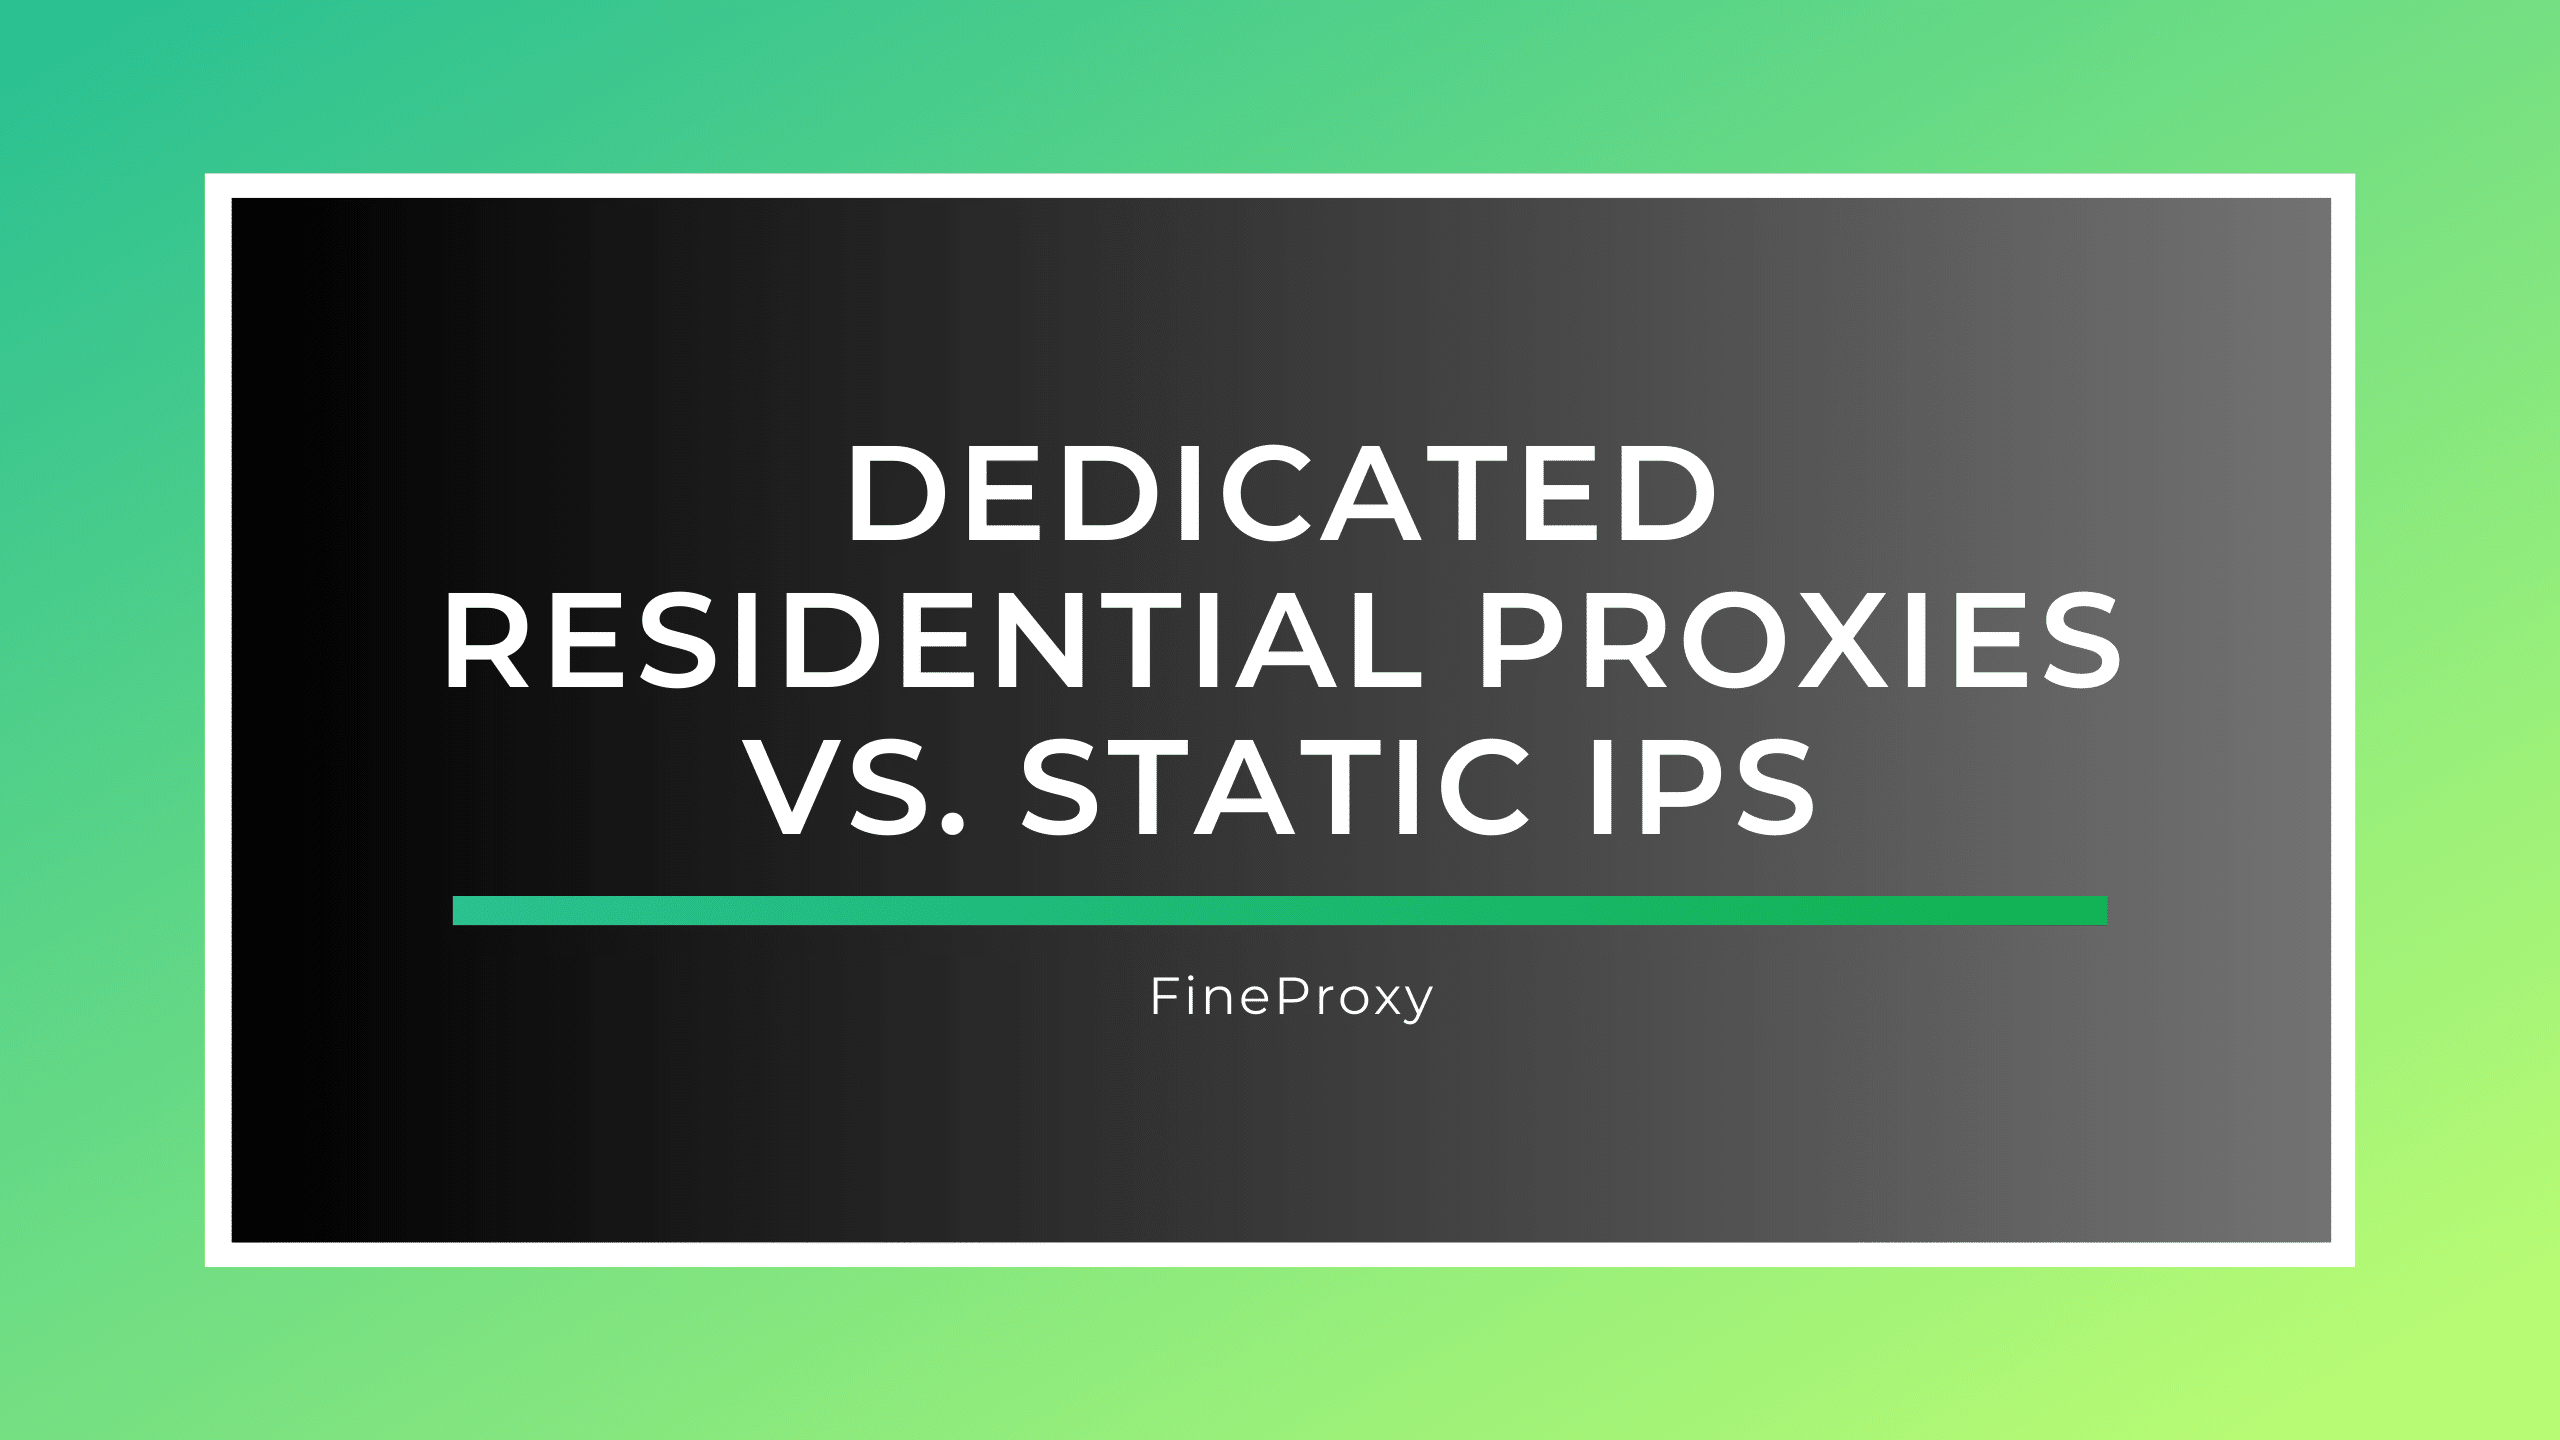 Vyhrazené rezidentní proxy vs. statické IP adresy